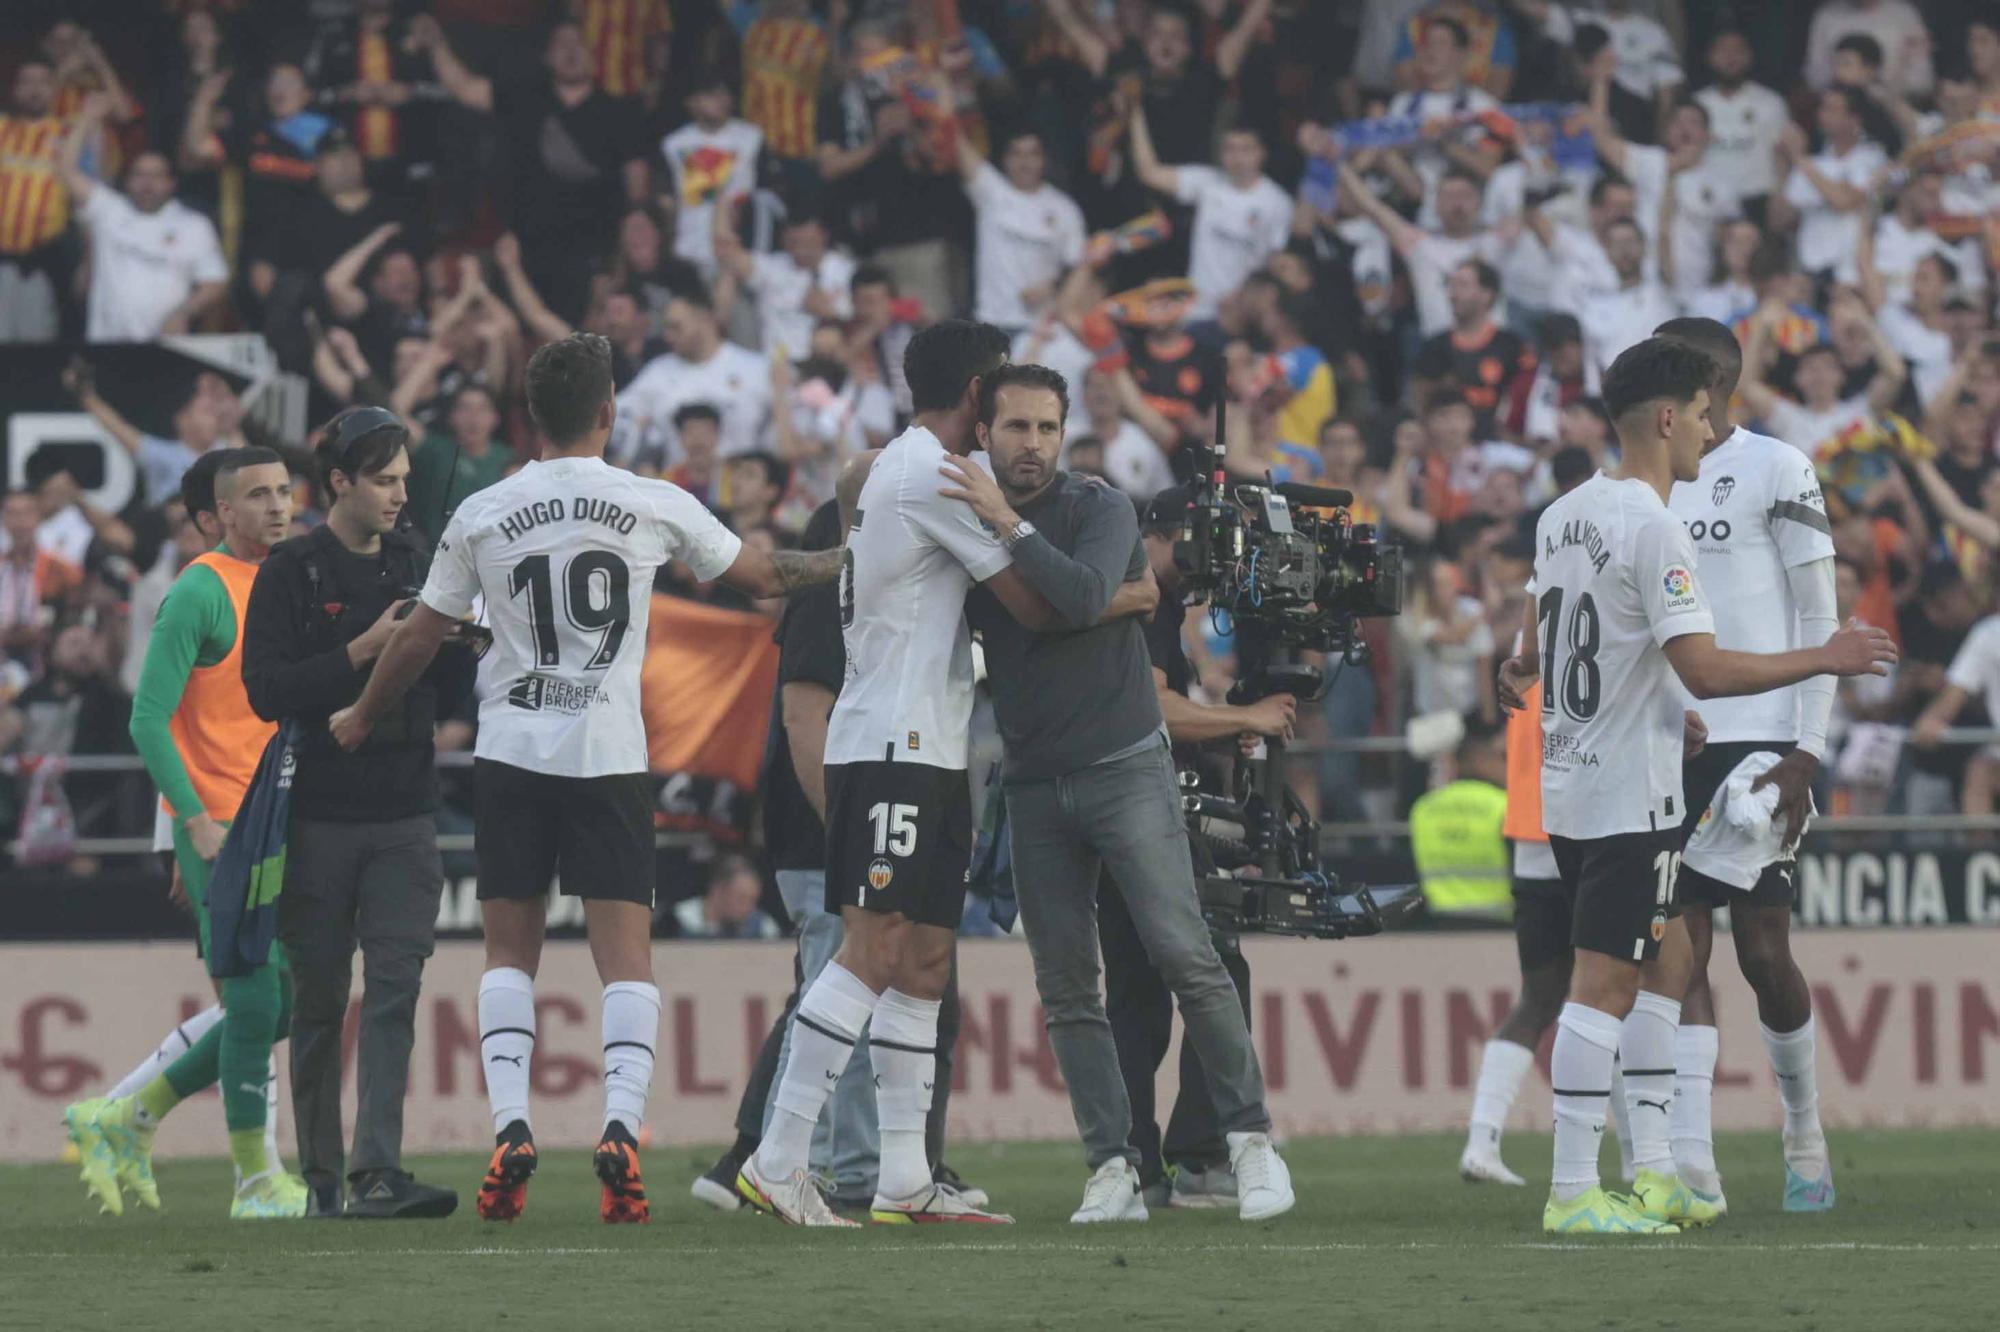 Valencia CF - Real Madrid en imágenes